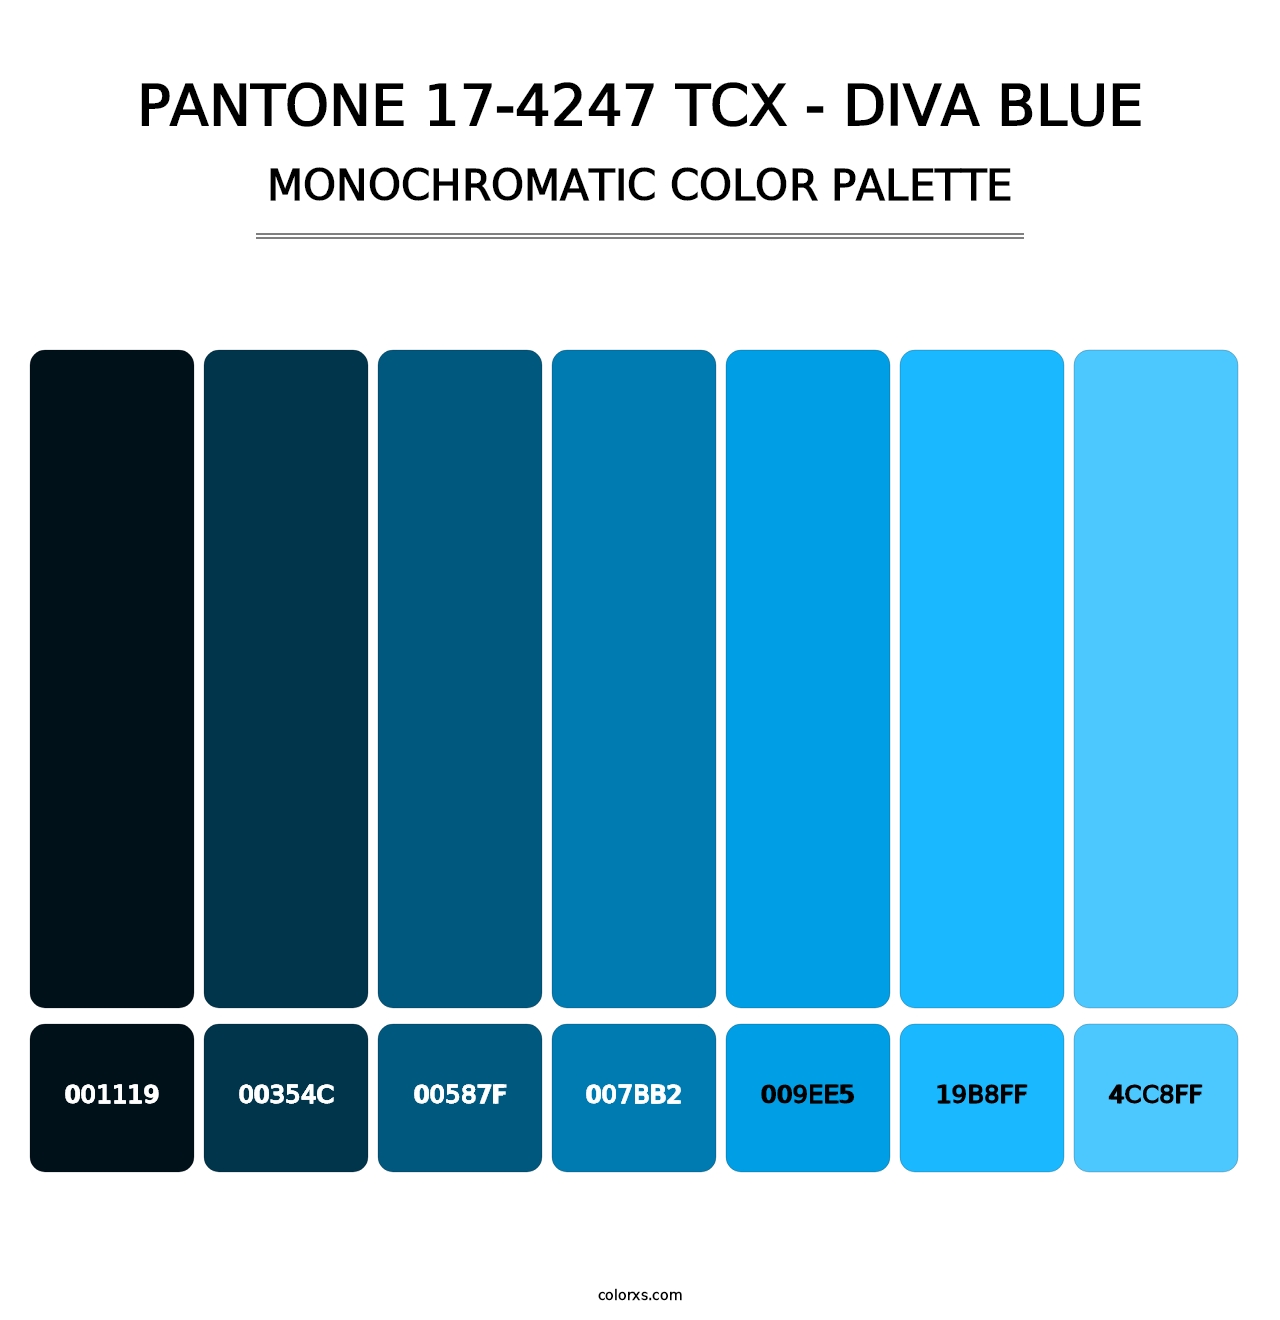 PANTONE 17-4247 TCX - Diva Blue - Monochromatic Color Palette